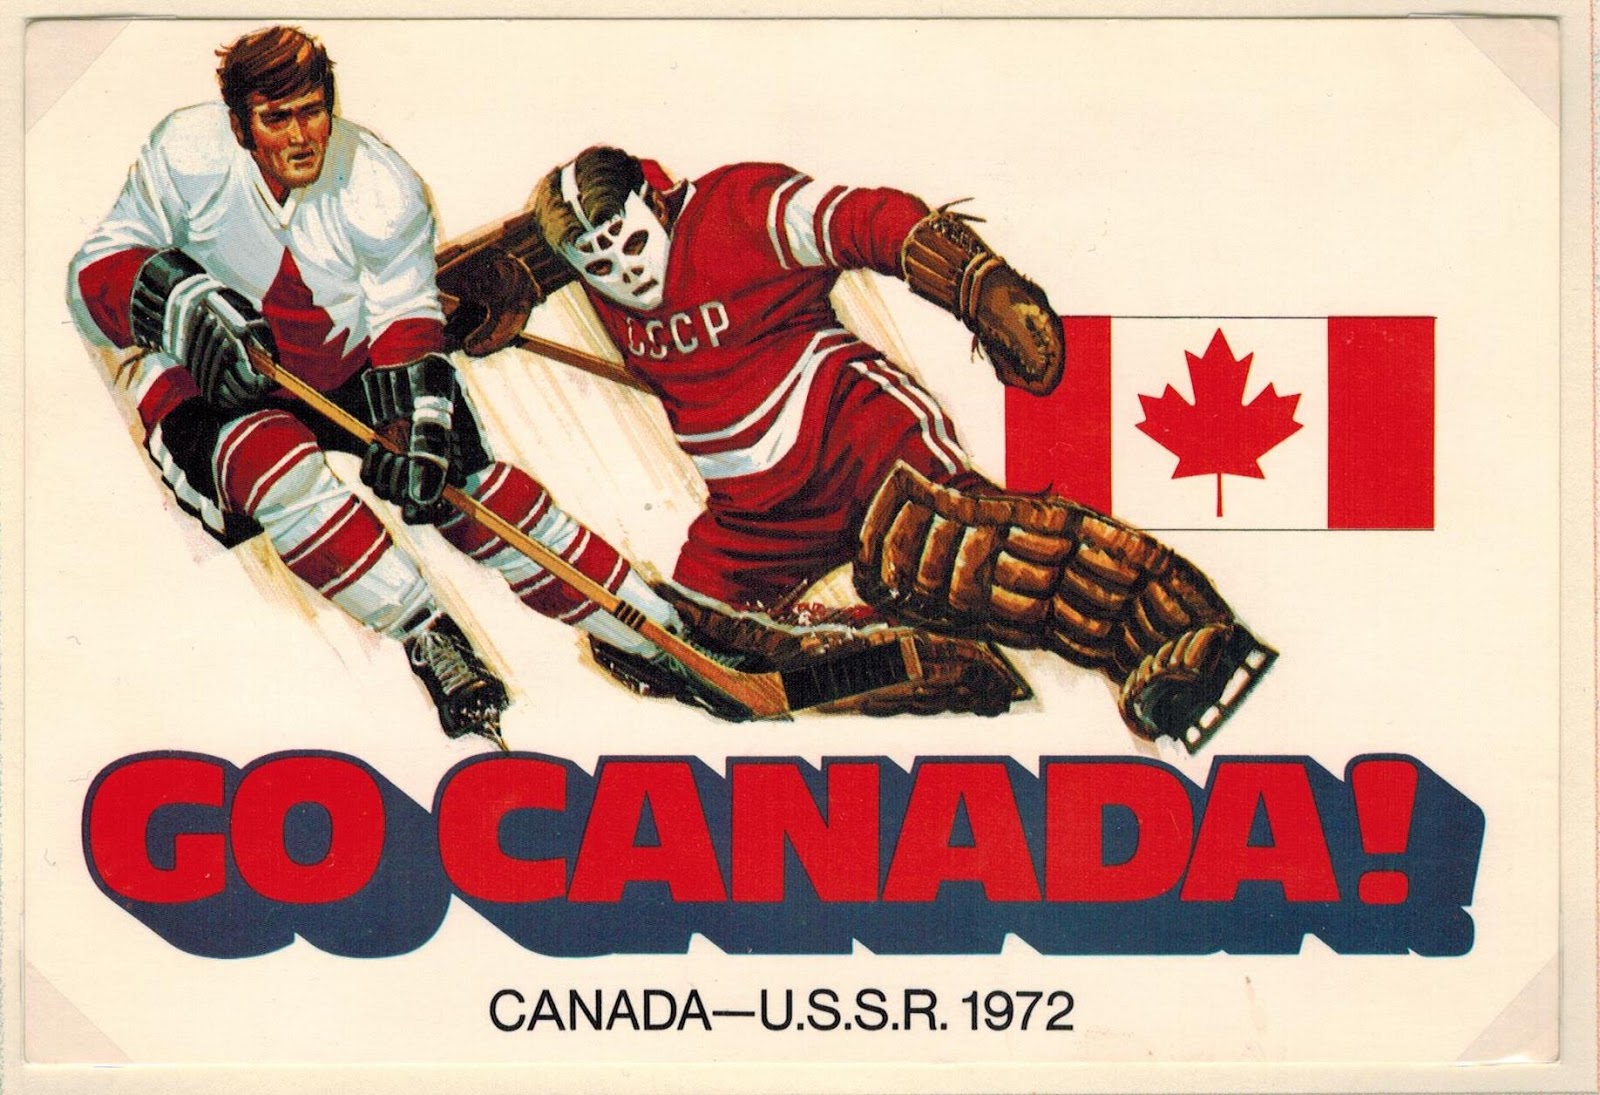 8 декабря 1972. Суперсерия СССР Канада 1972 Харламов. Хоккейная суперсерия СССР Канада 1972. СССР против Канады 1972. Хоккей суперсерия 1972 год СССР-Канада.